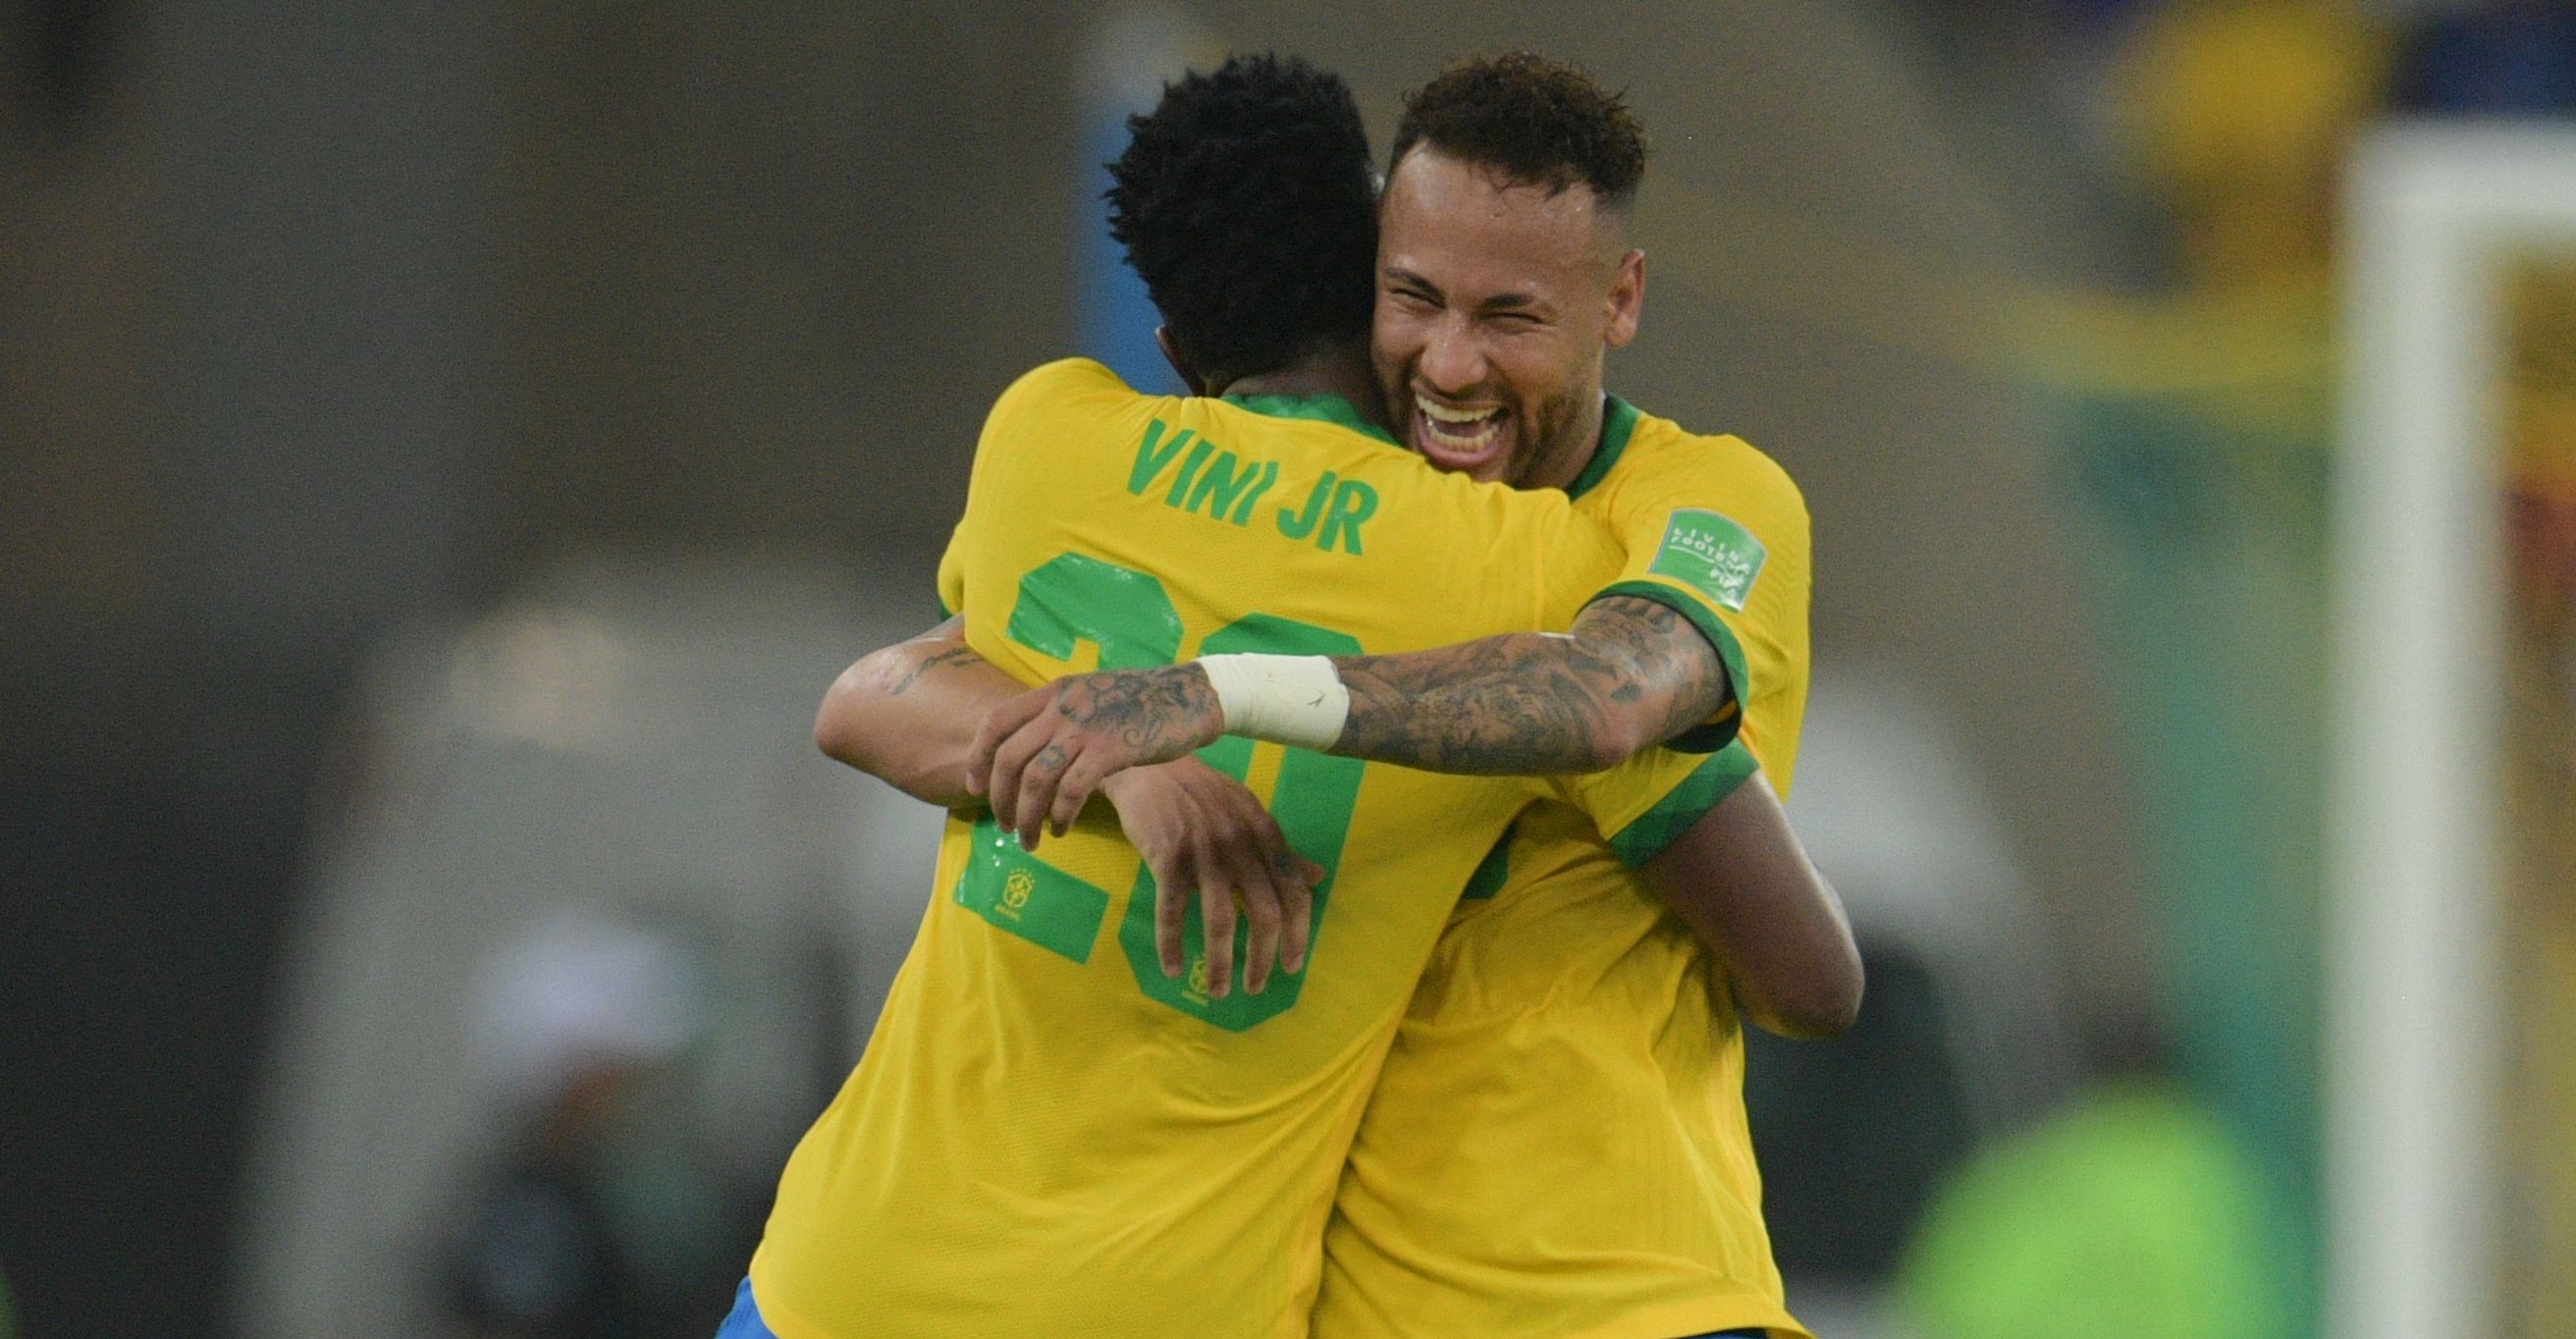 Vinícius y Neymar serán jugadores clave en la travesía mundialista de Brasil en Qatar 2022. (Foto Prensa Libre: AFP)